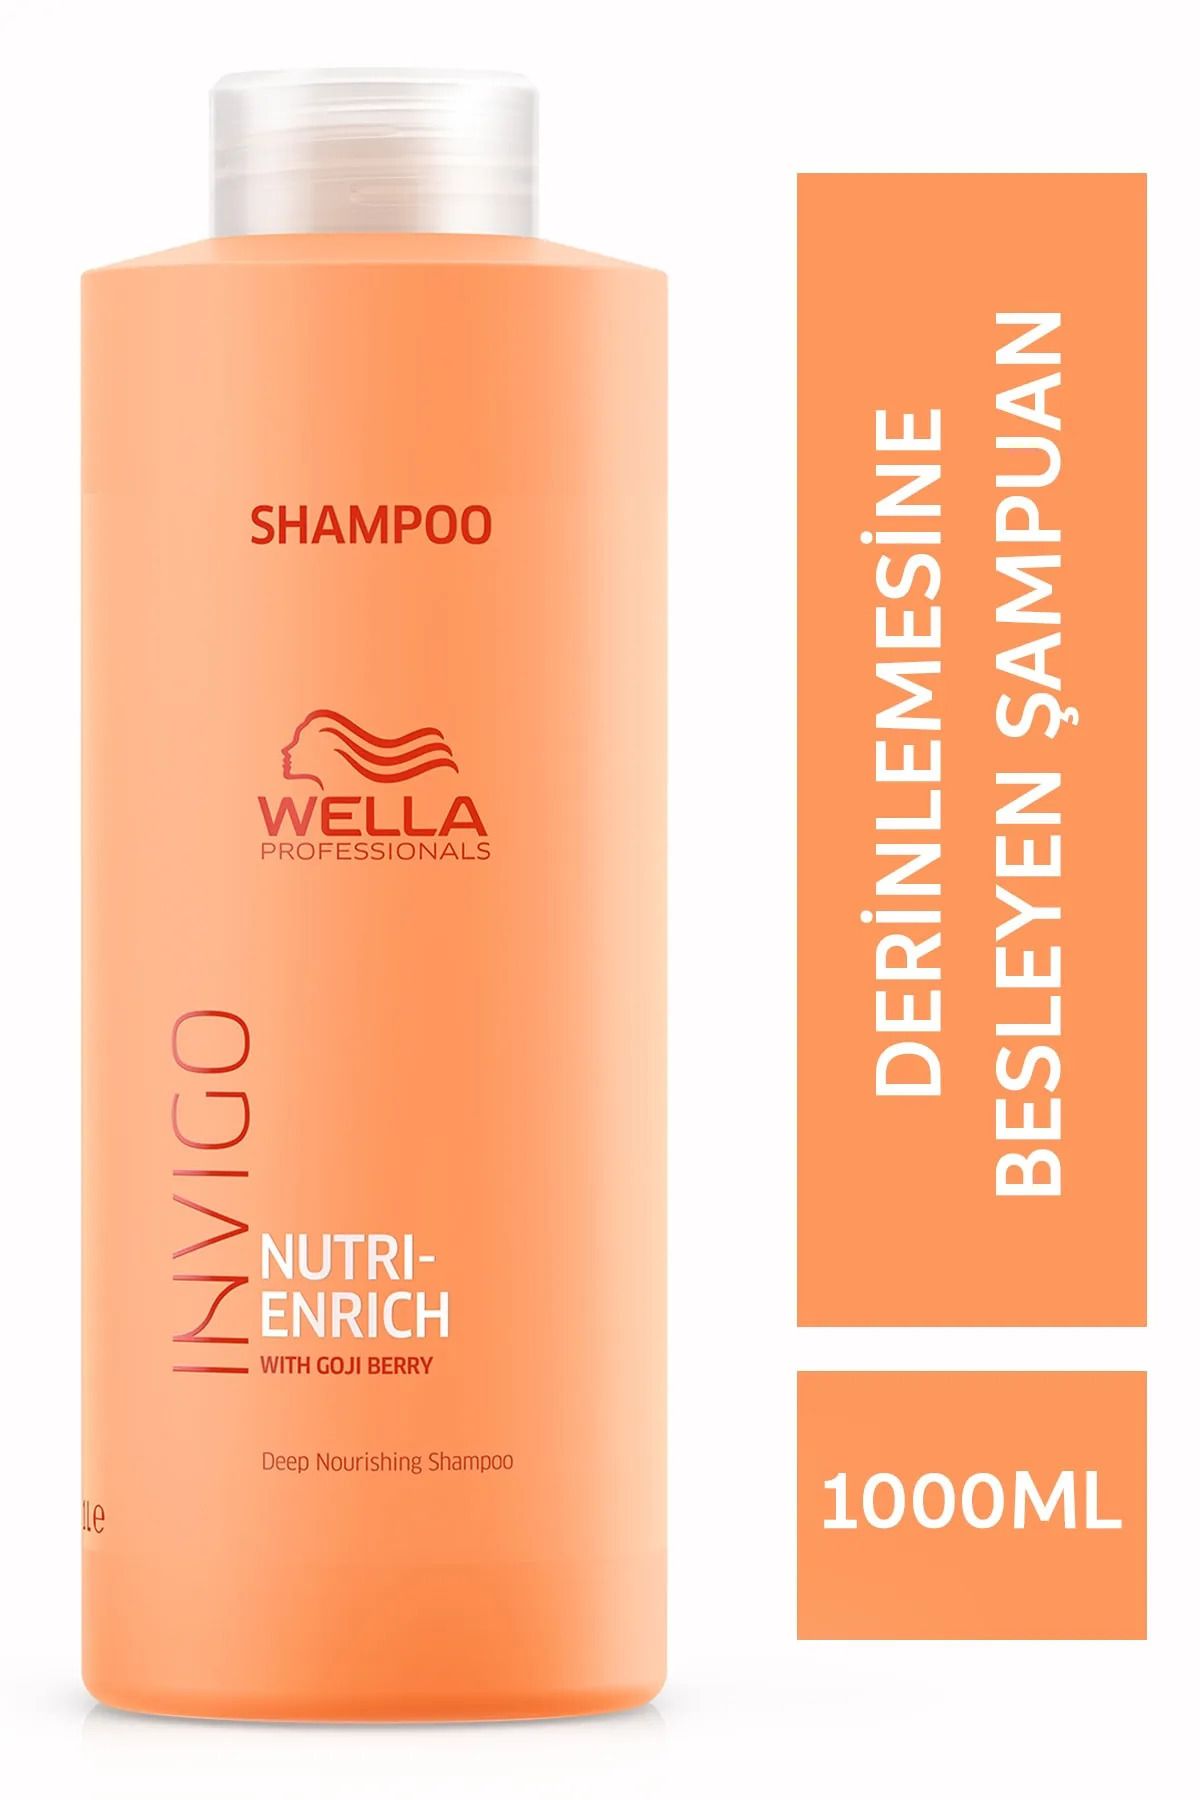 Wella Nutri Enrich Yıpranmış Saçlar İçin Goji Meyveli Besleyici Profesyonel Şampuan 1000mlSED6564131